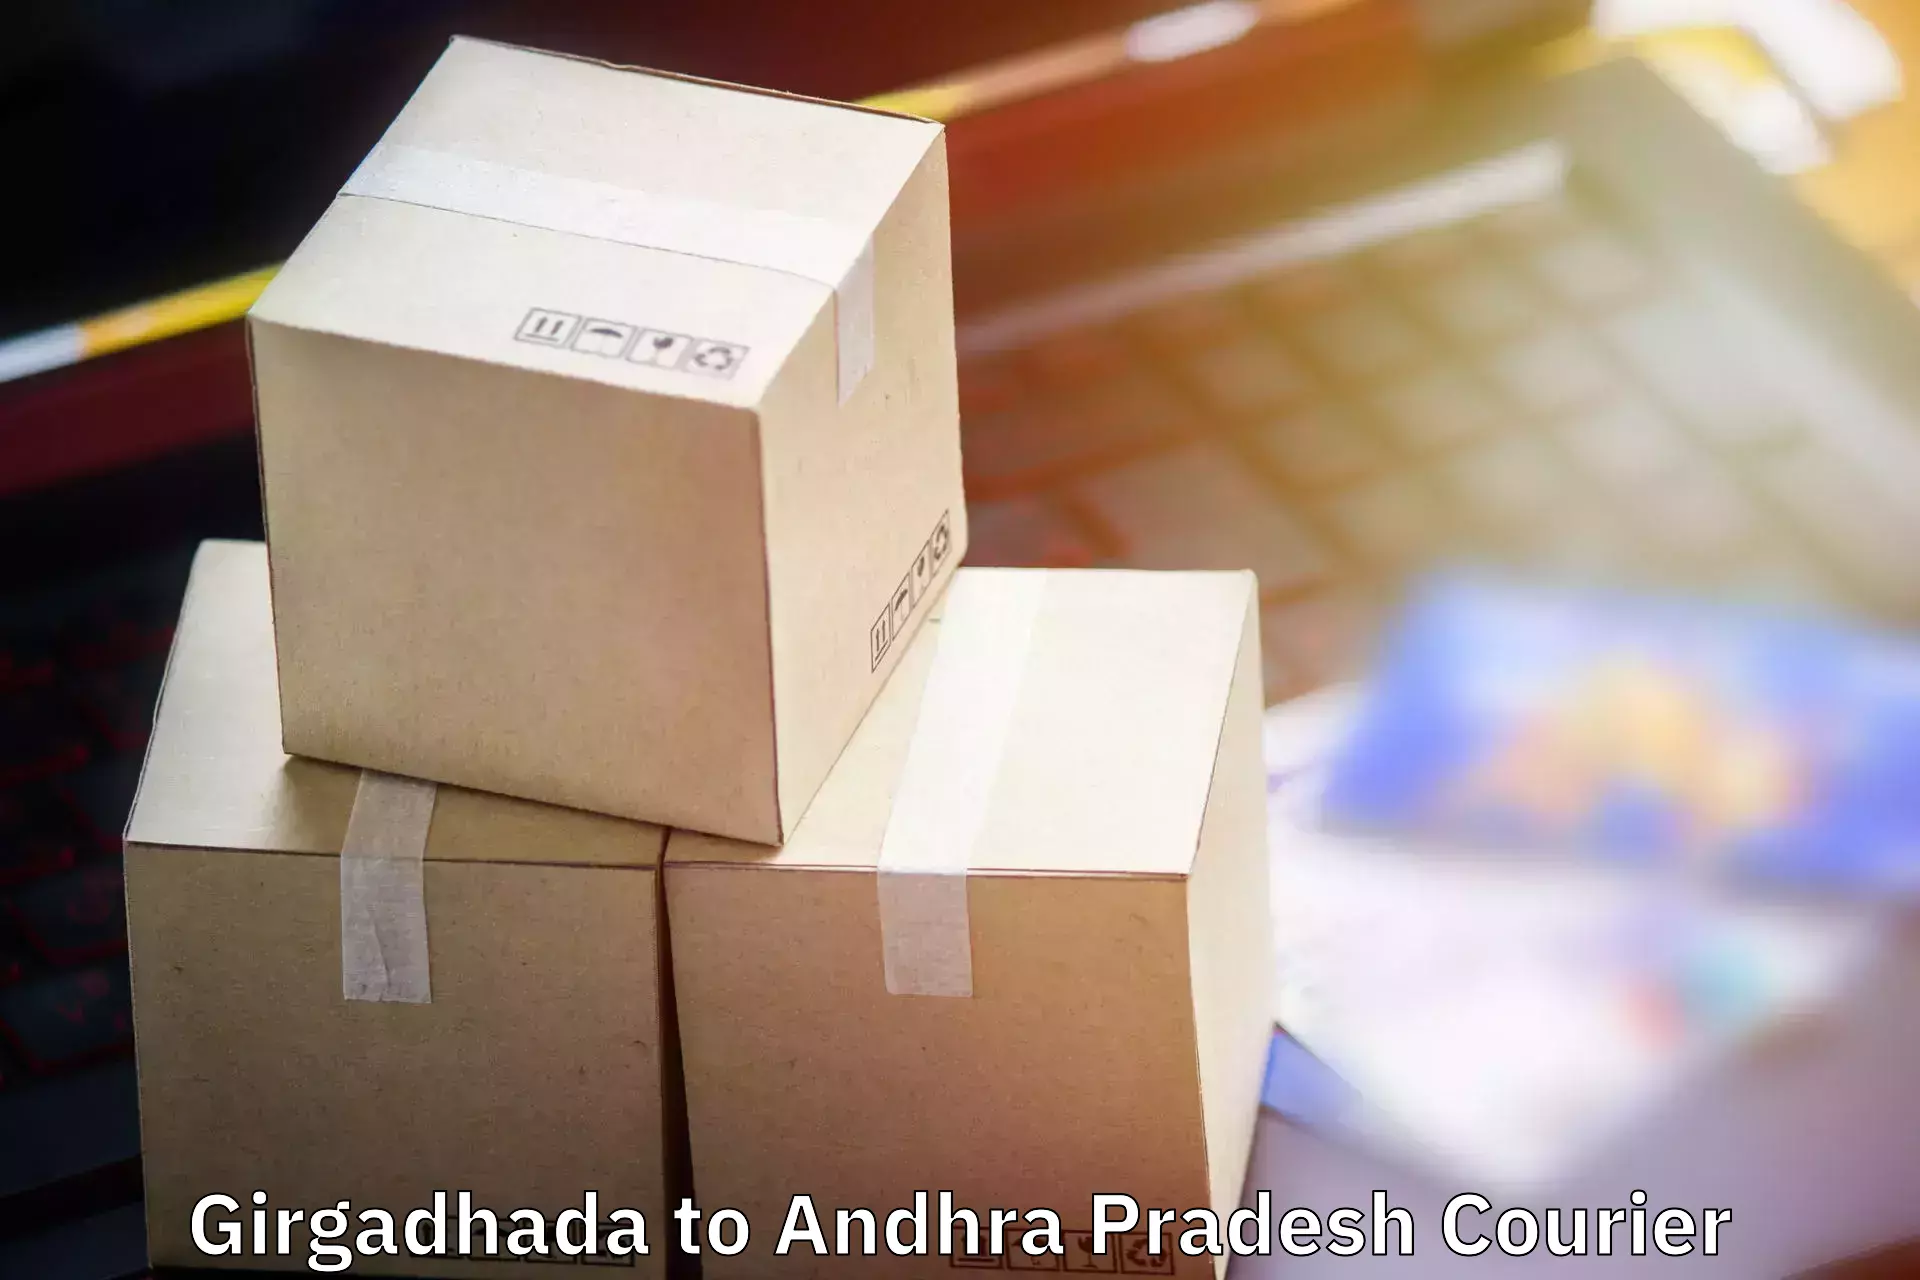 Luggage courier network Girgadhada to Koruprolu